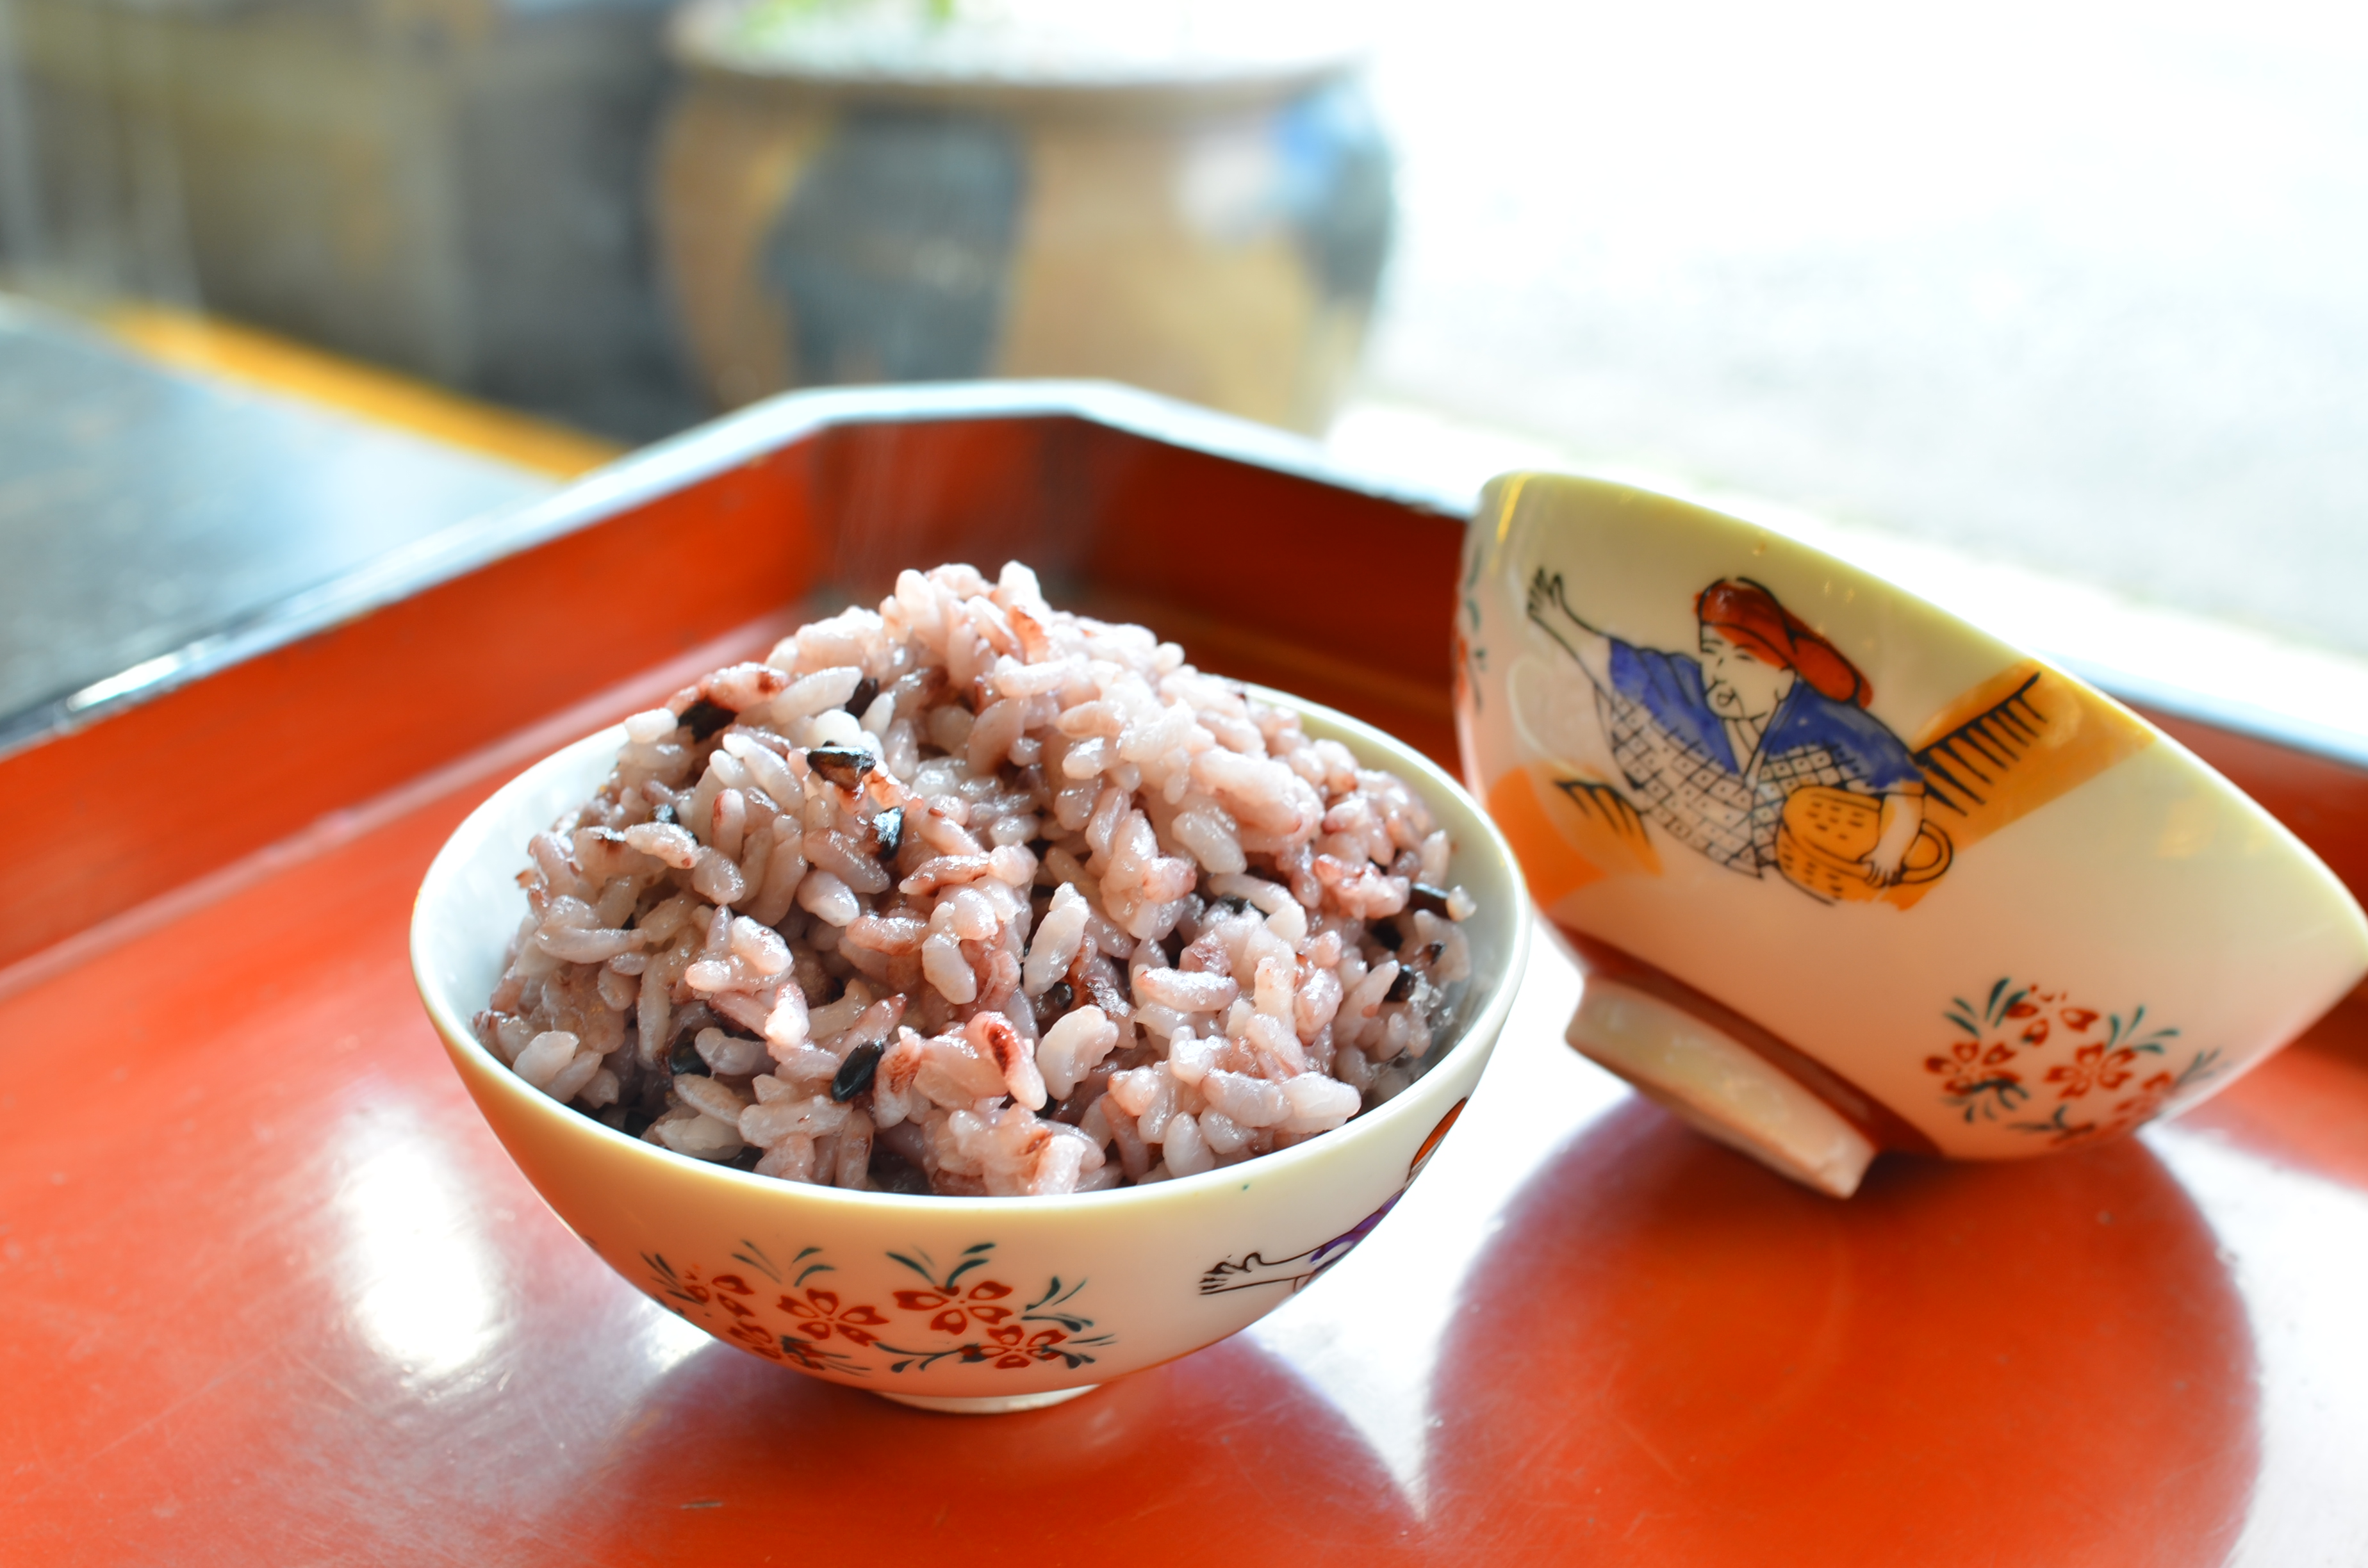 【お米マイスター】めでたいお米で御祝いを彩り “紅桜”～BENI-ZAKURA～ 無洗米5kg 黒米 古代米　H056-088